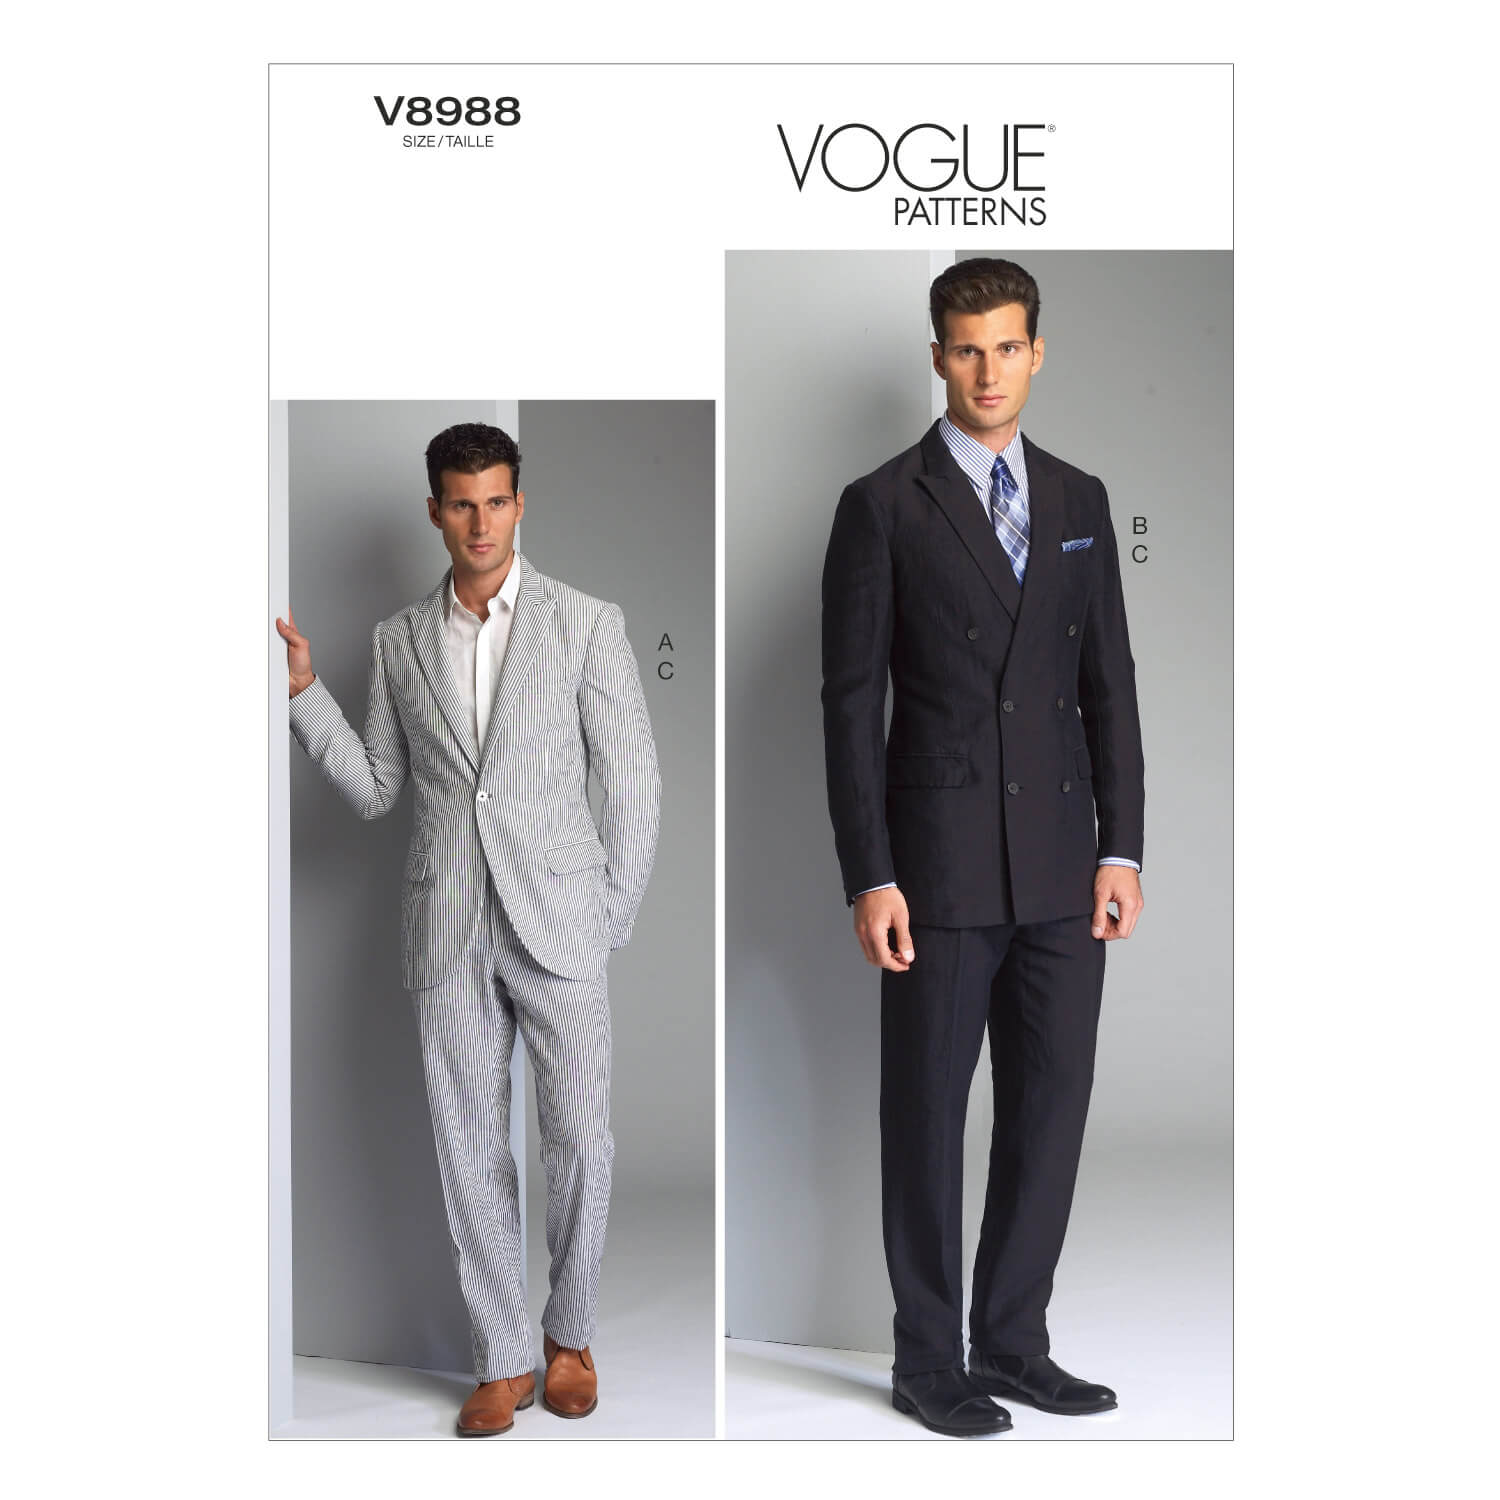 Vogue Patterns V8988 Men's Jacket and Pants